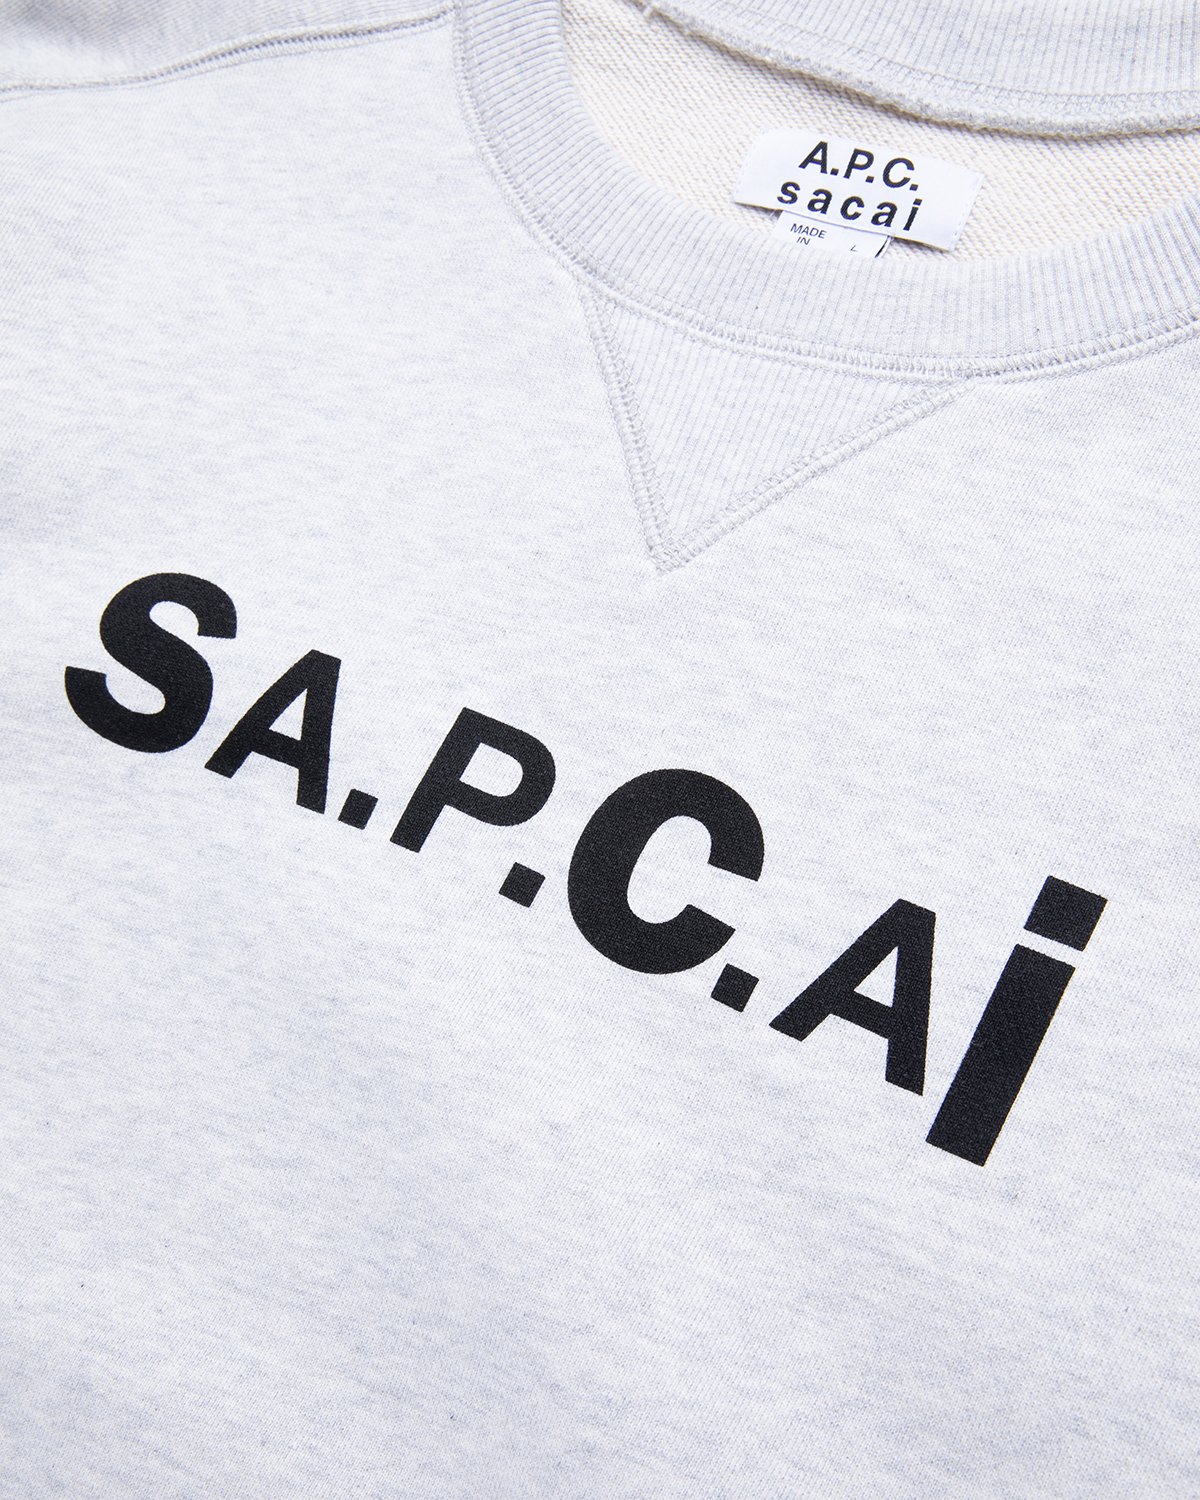 A.P.C. x Sacai - Tani Sweater Light Grey - Clothing - Grey - Image 3